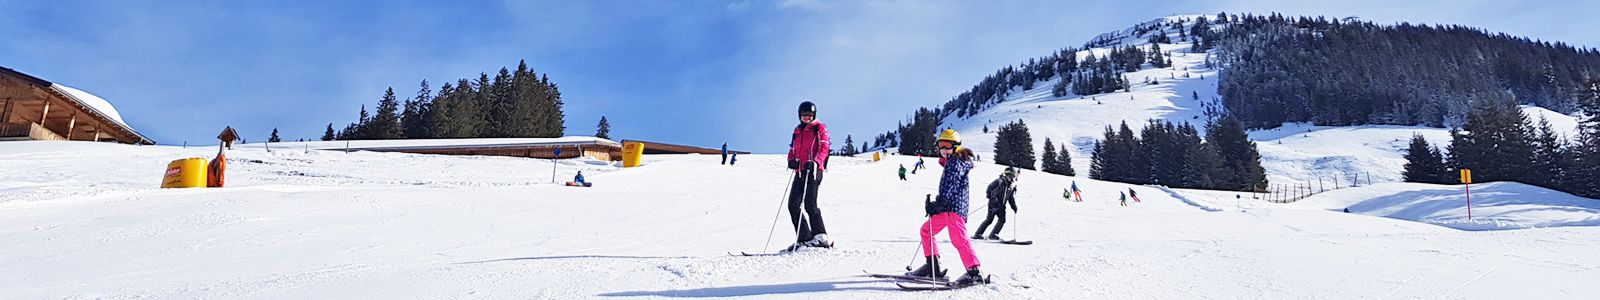 Ski's kopen? Dit je weten